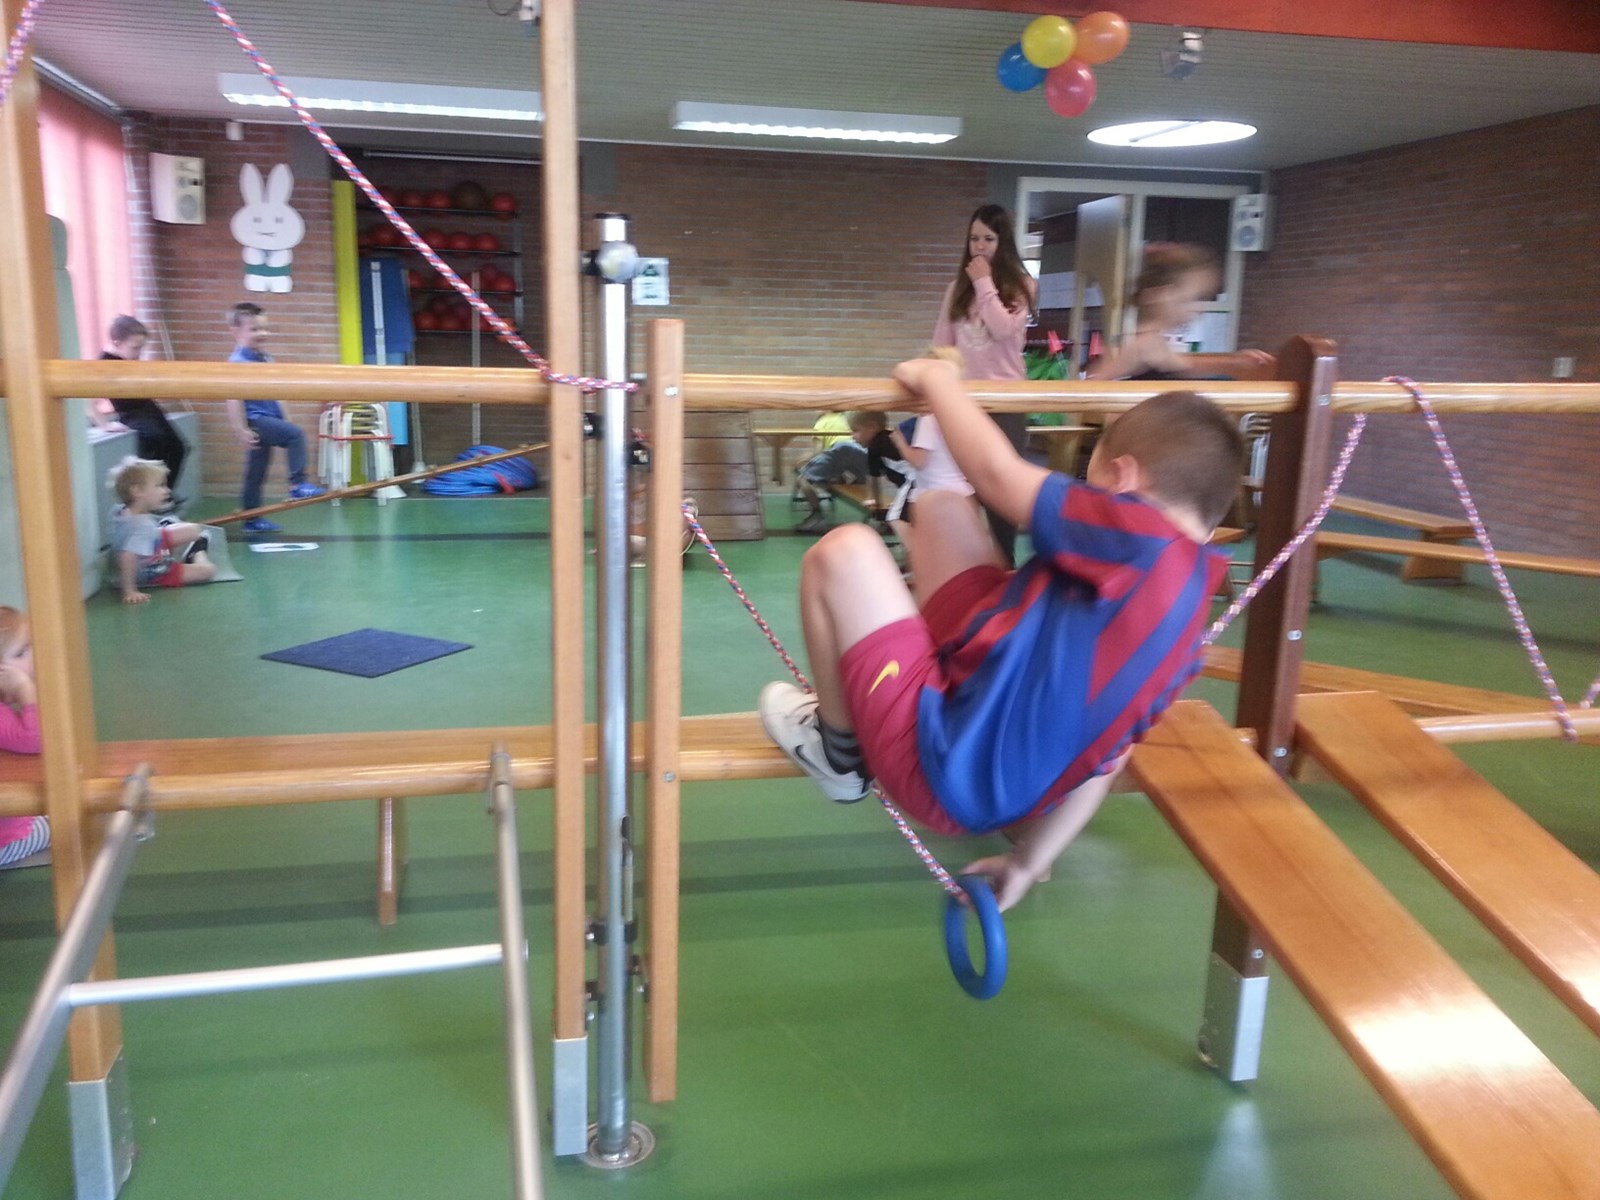 Wonderbaarlijk Gymmen met kleuters - Kindcentrum De Brug - Basisschool Zwijndrecht RT-39